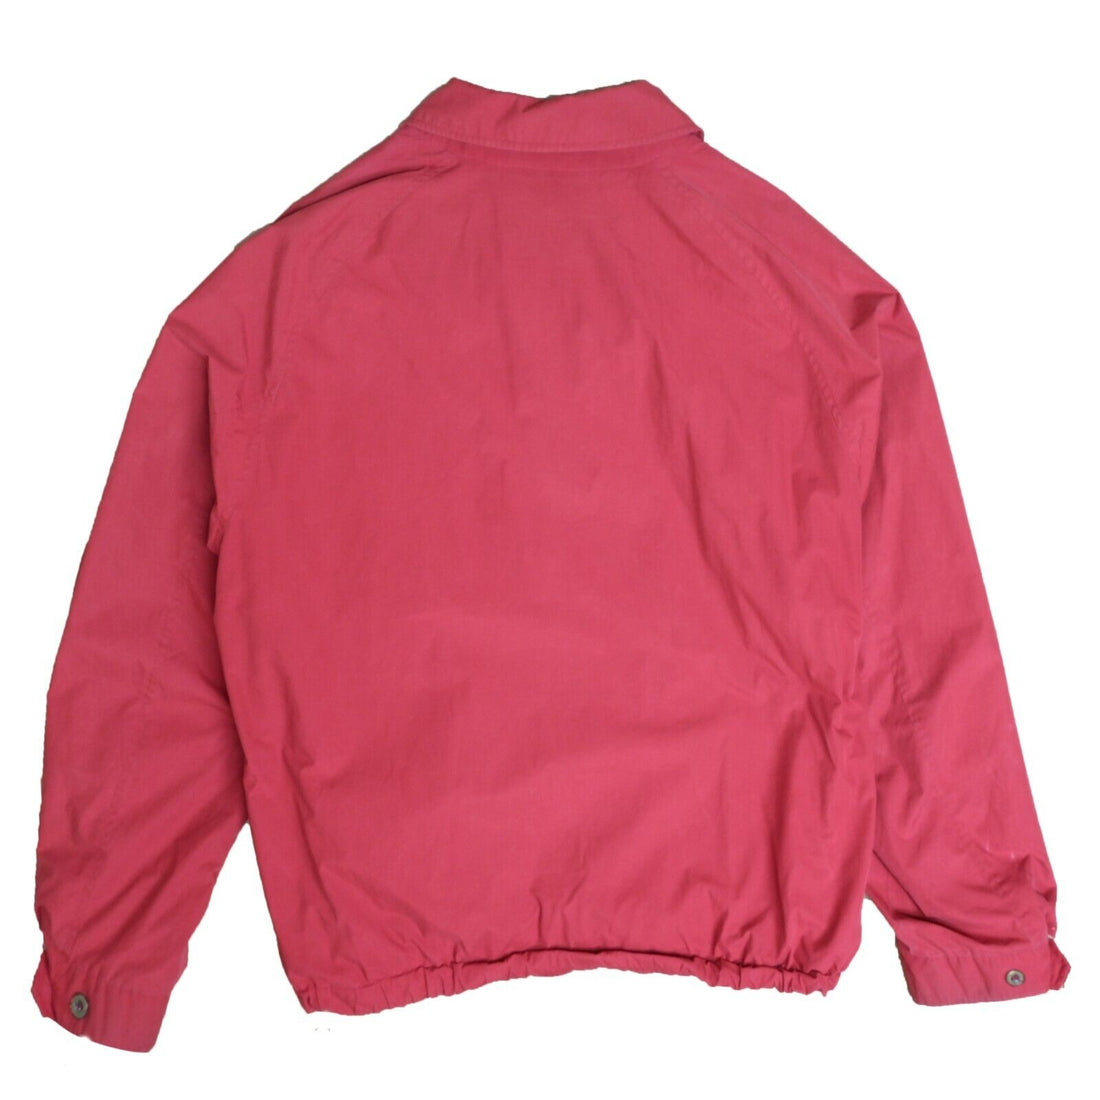 Vintage Burberrys Light Harrington Jacket Size XL Red